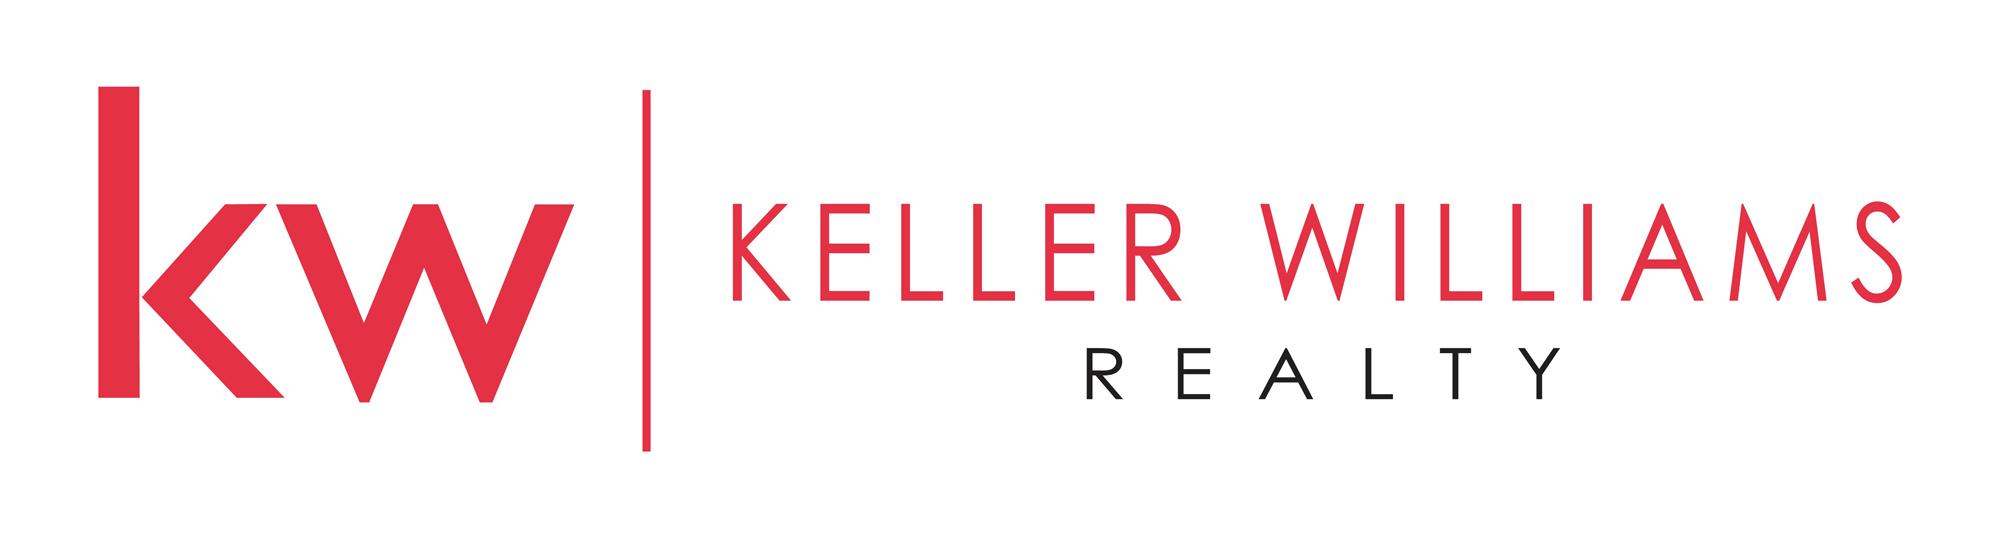 Keller Williams Realty Logo - Keller williams realty Logos